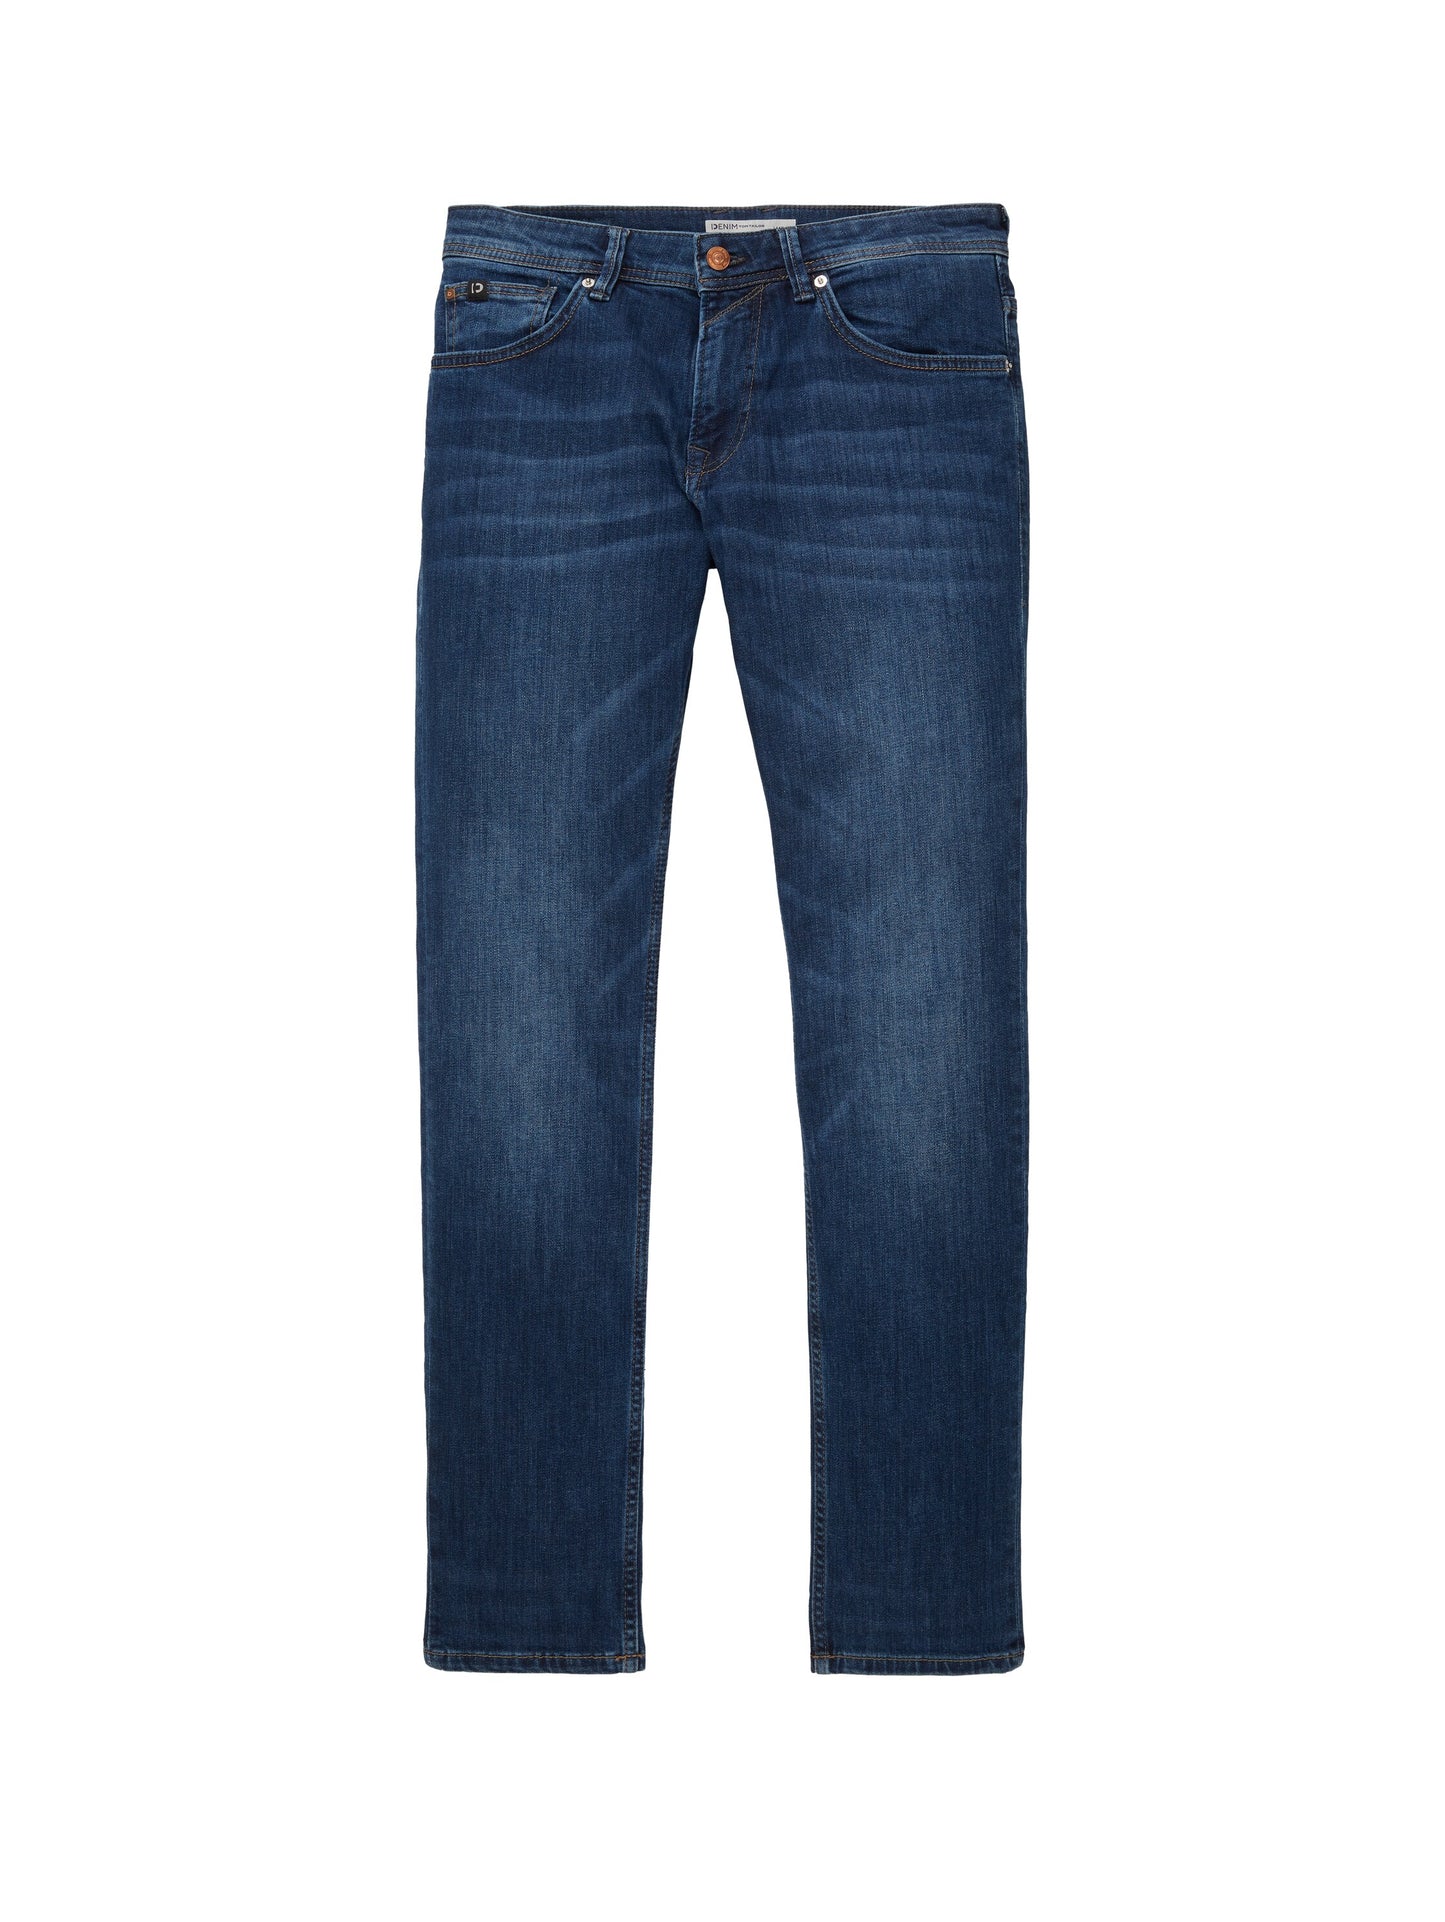 Aedan Straight Jeans (Mid Stone Wash)